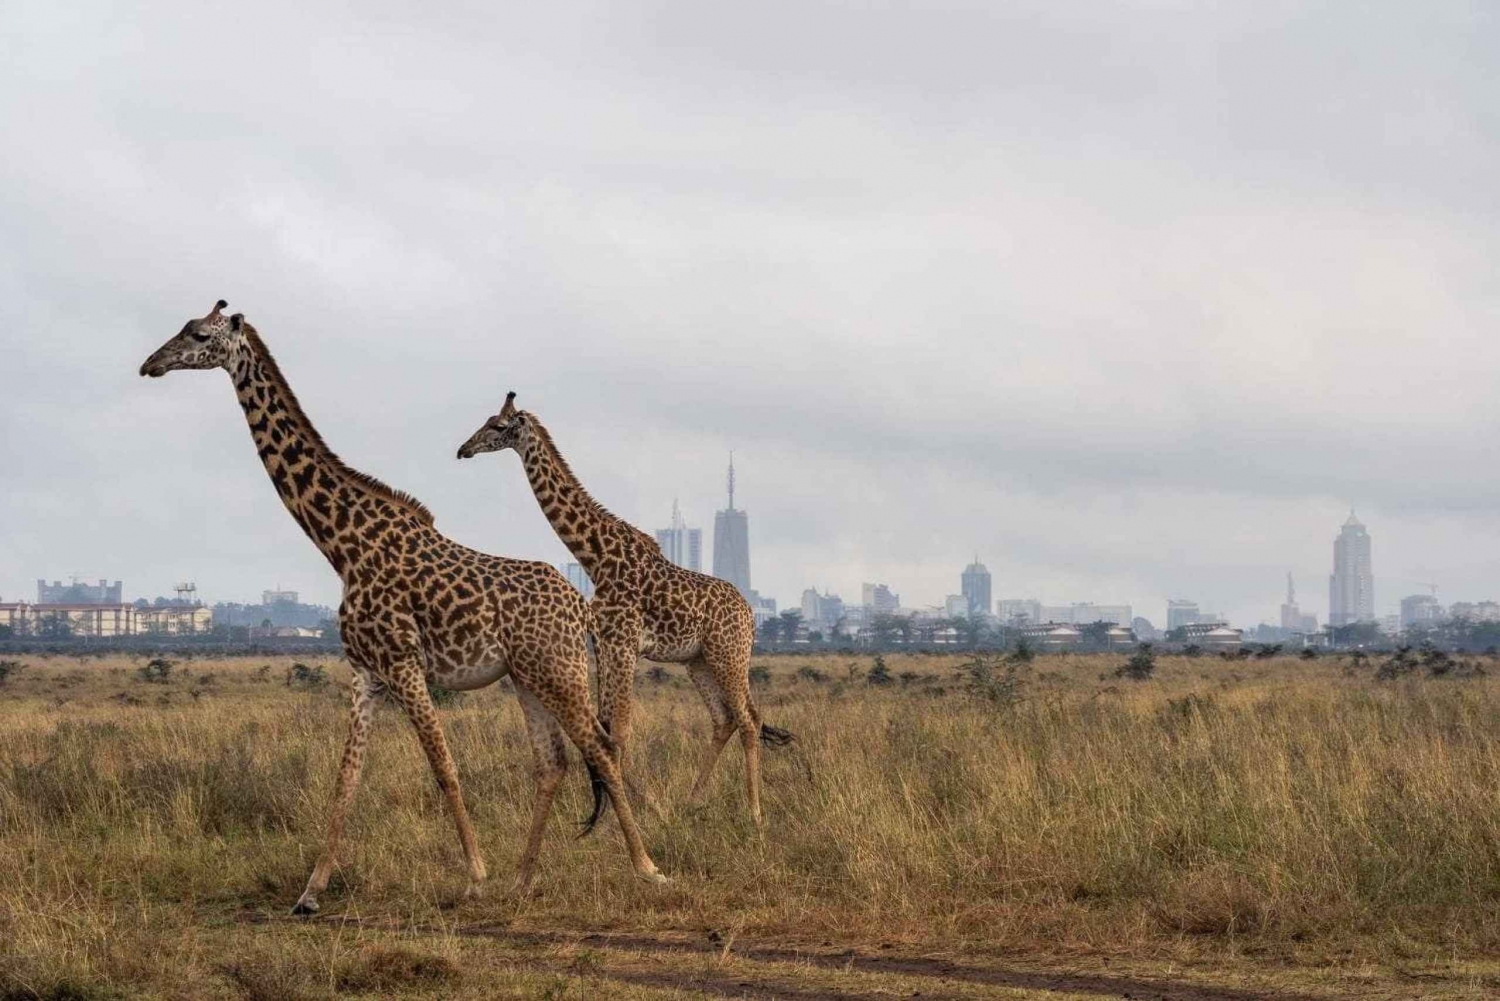 Nairobi; Park Narodowy Nairobi, centrum dla małych słoni i żyraf